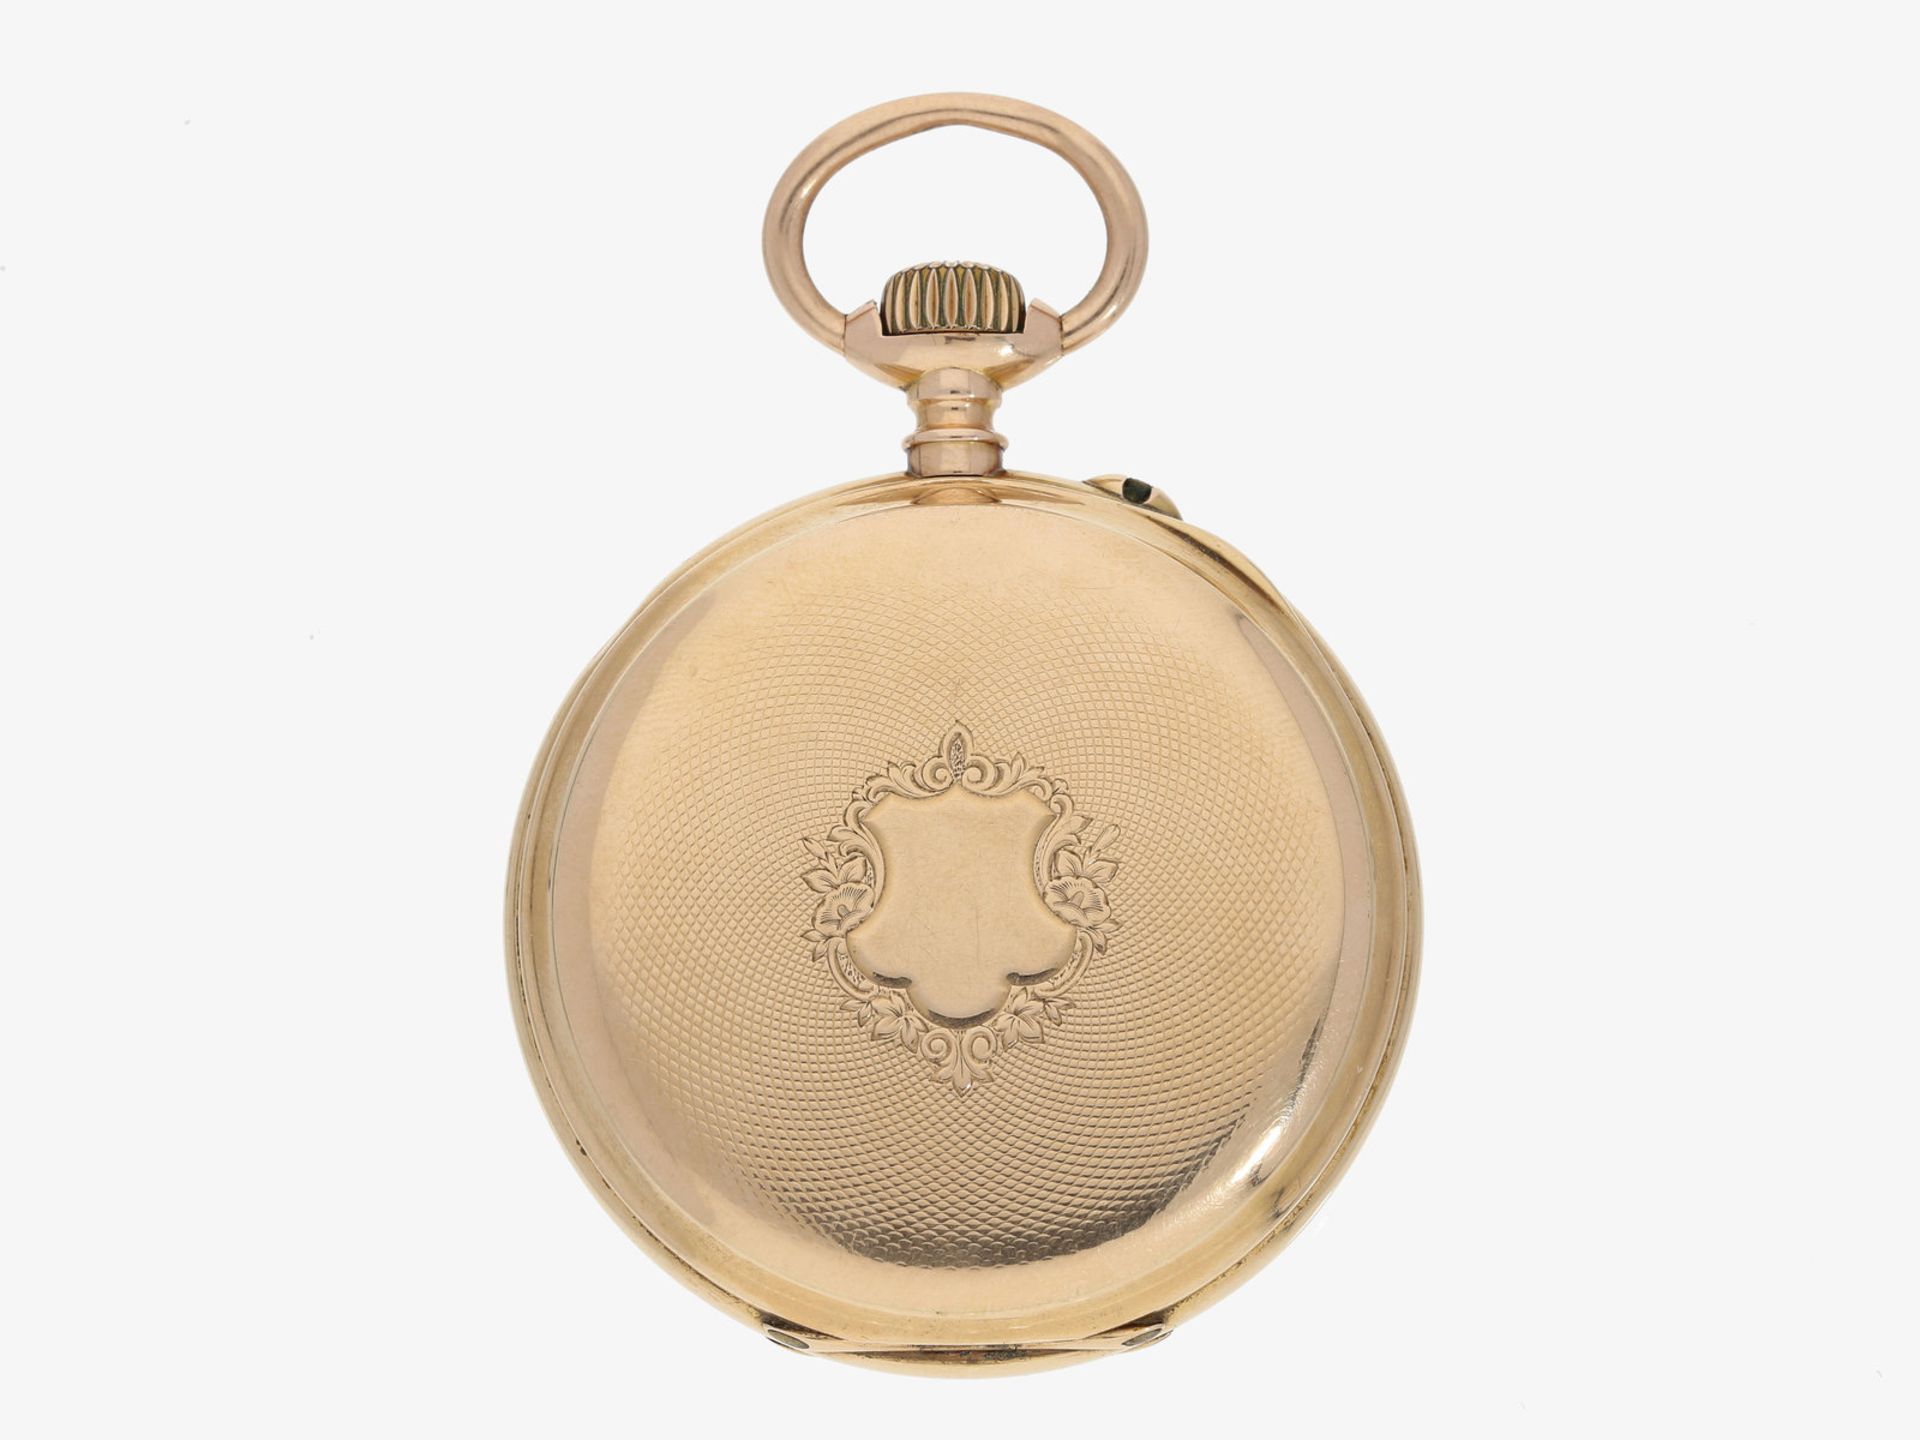 Taschenuhr: feine Präzisionstaschenuhr in Glashütter Bauweise, qualitätsvolle Sammleruhr, Dubois & - Bild 2 aus 3